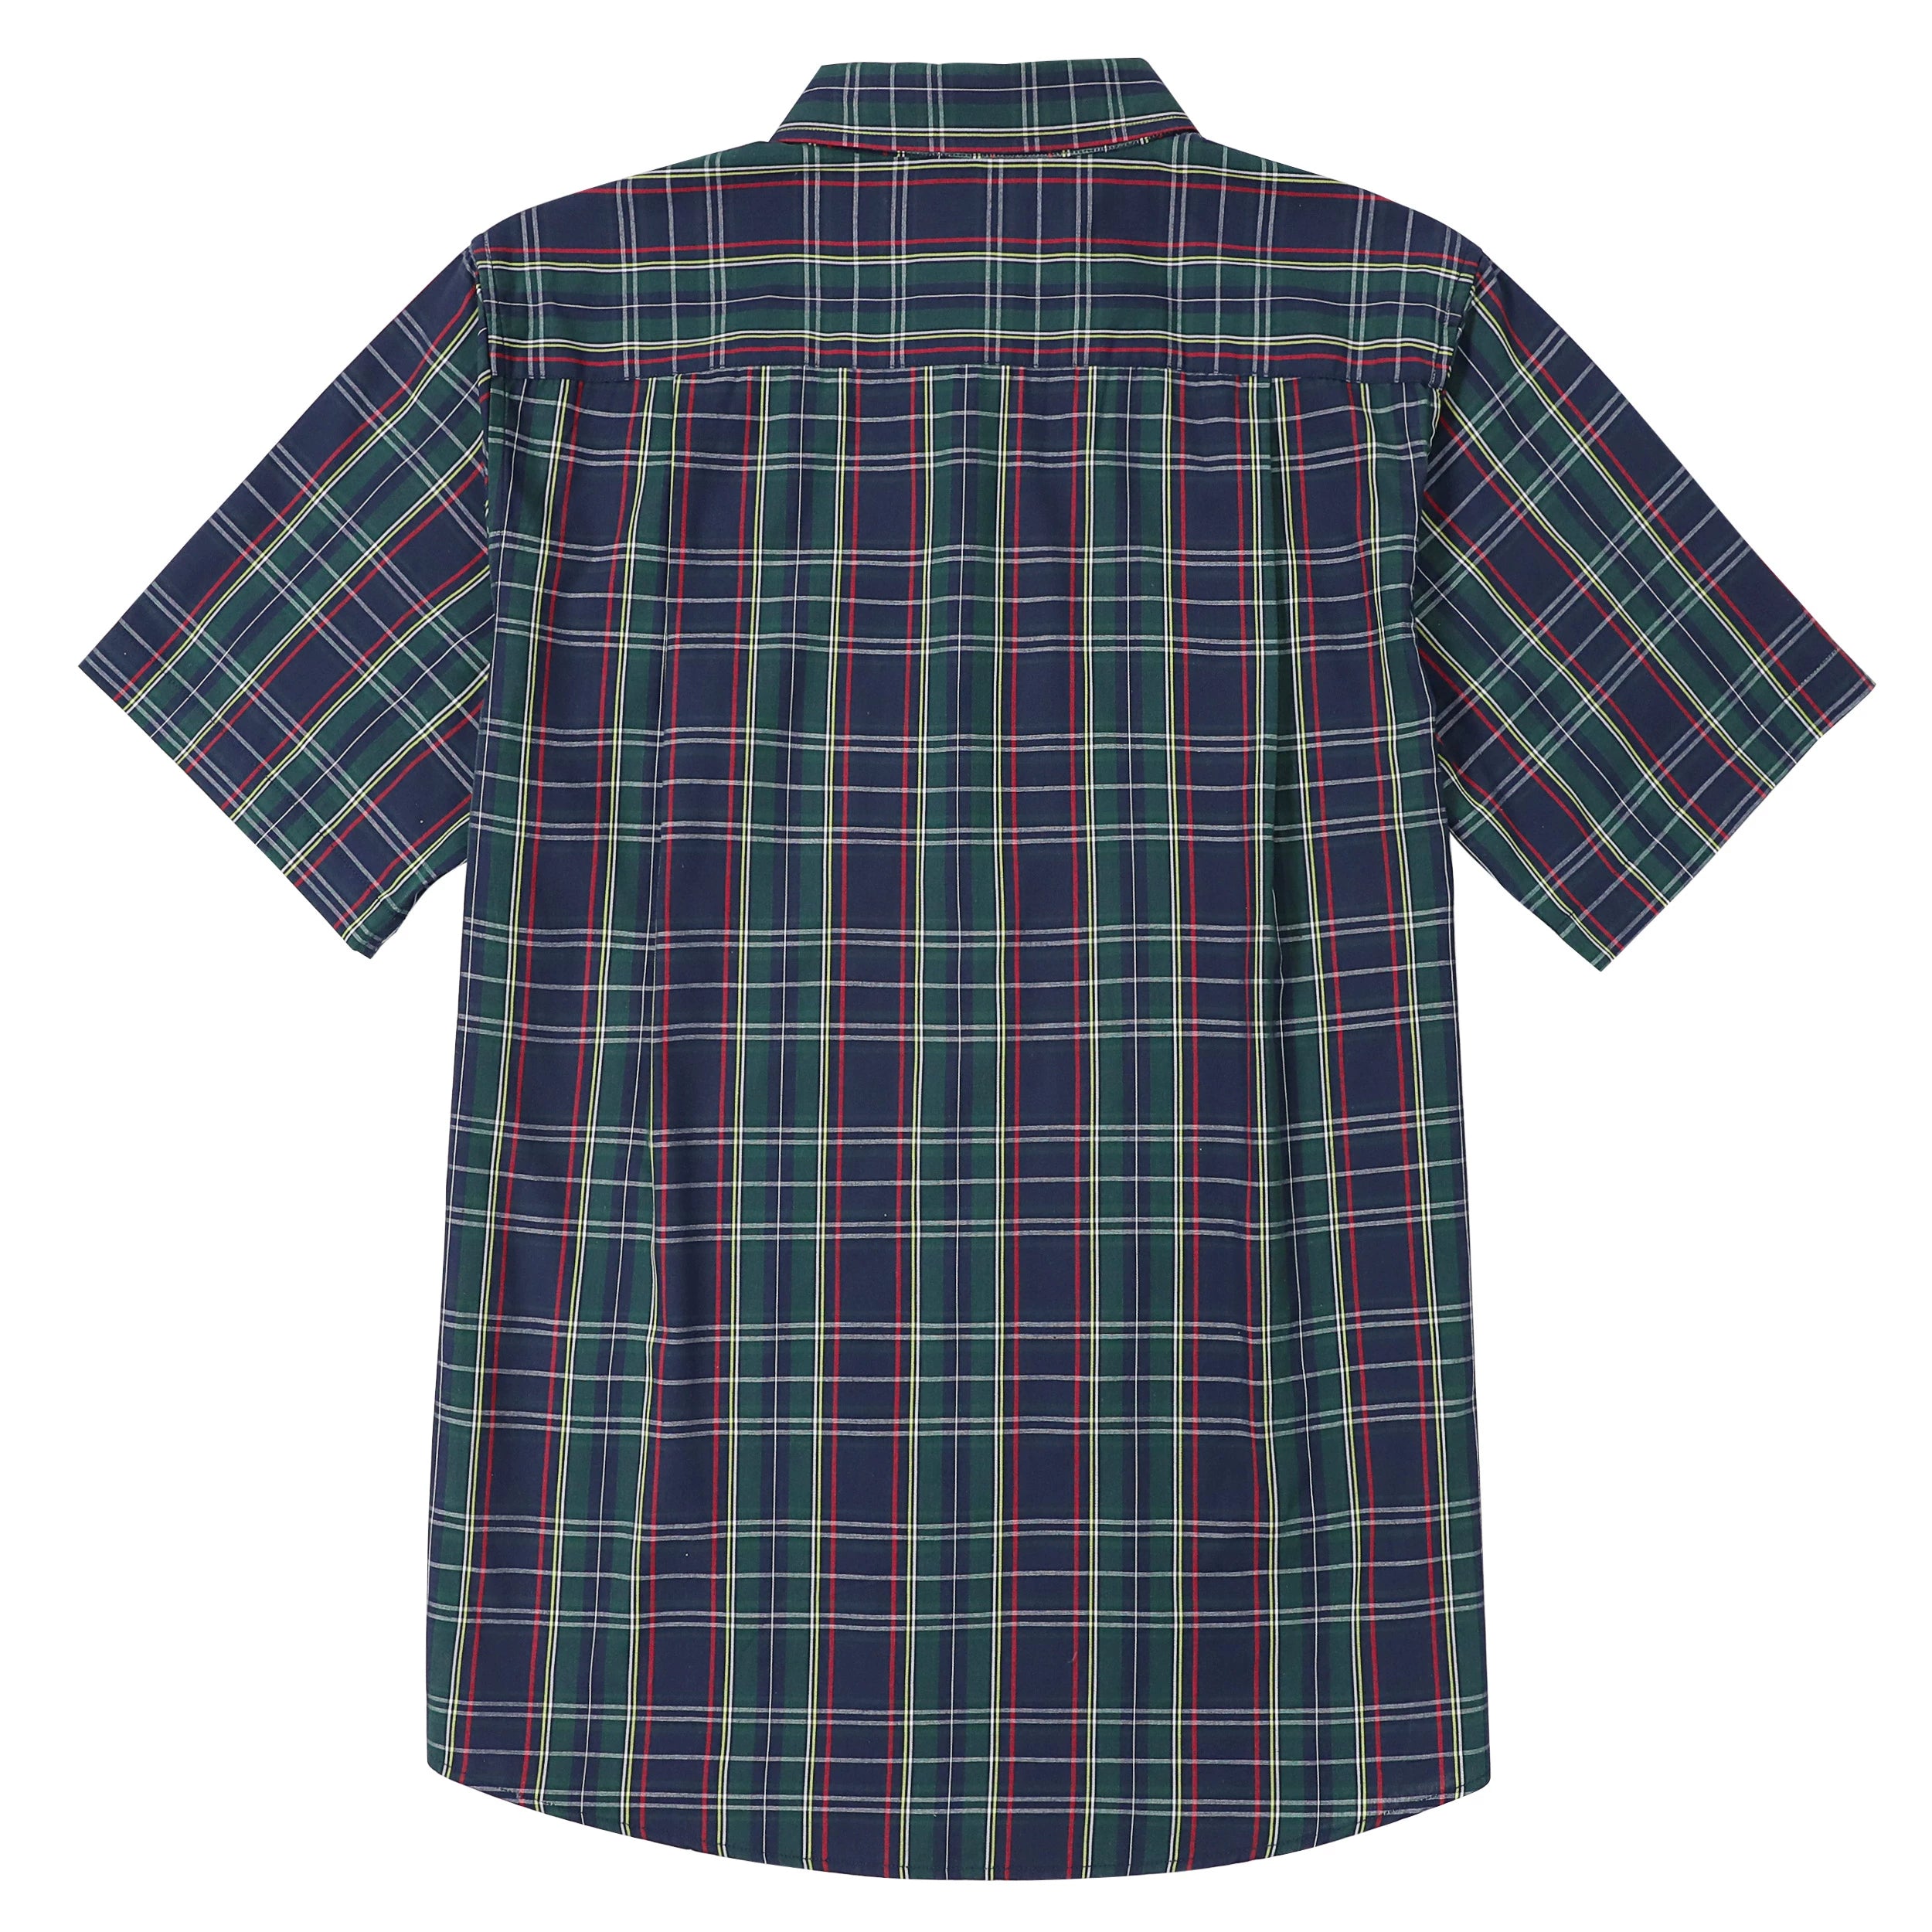 Dubinik® Mens Short Sleeve Button Down Shirts Summer Vintage Short Sleeve Button Down Men Lightweight Men's Casual Shirts#51032